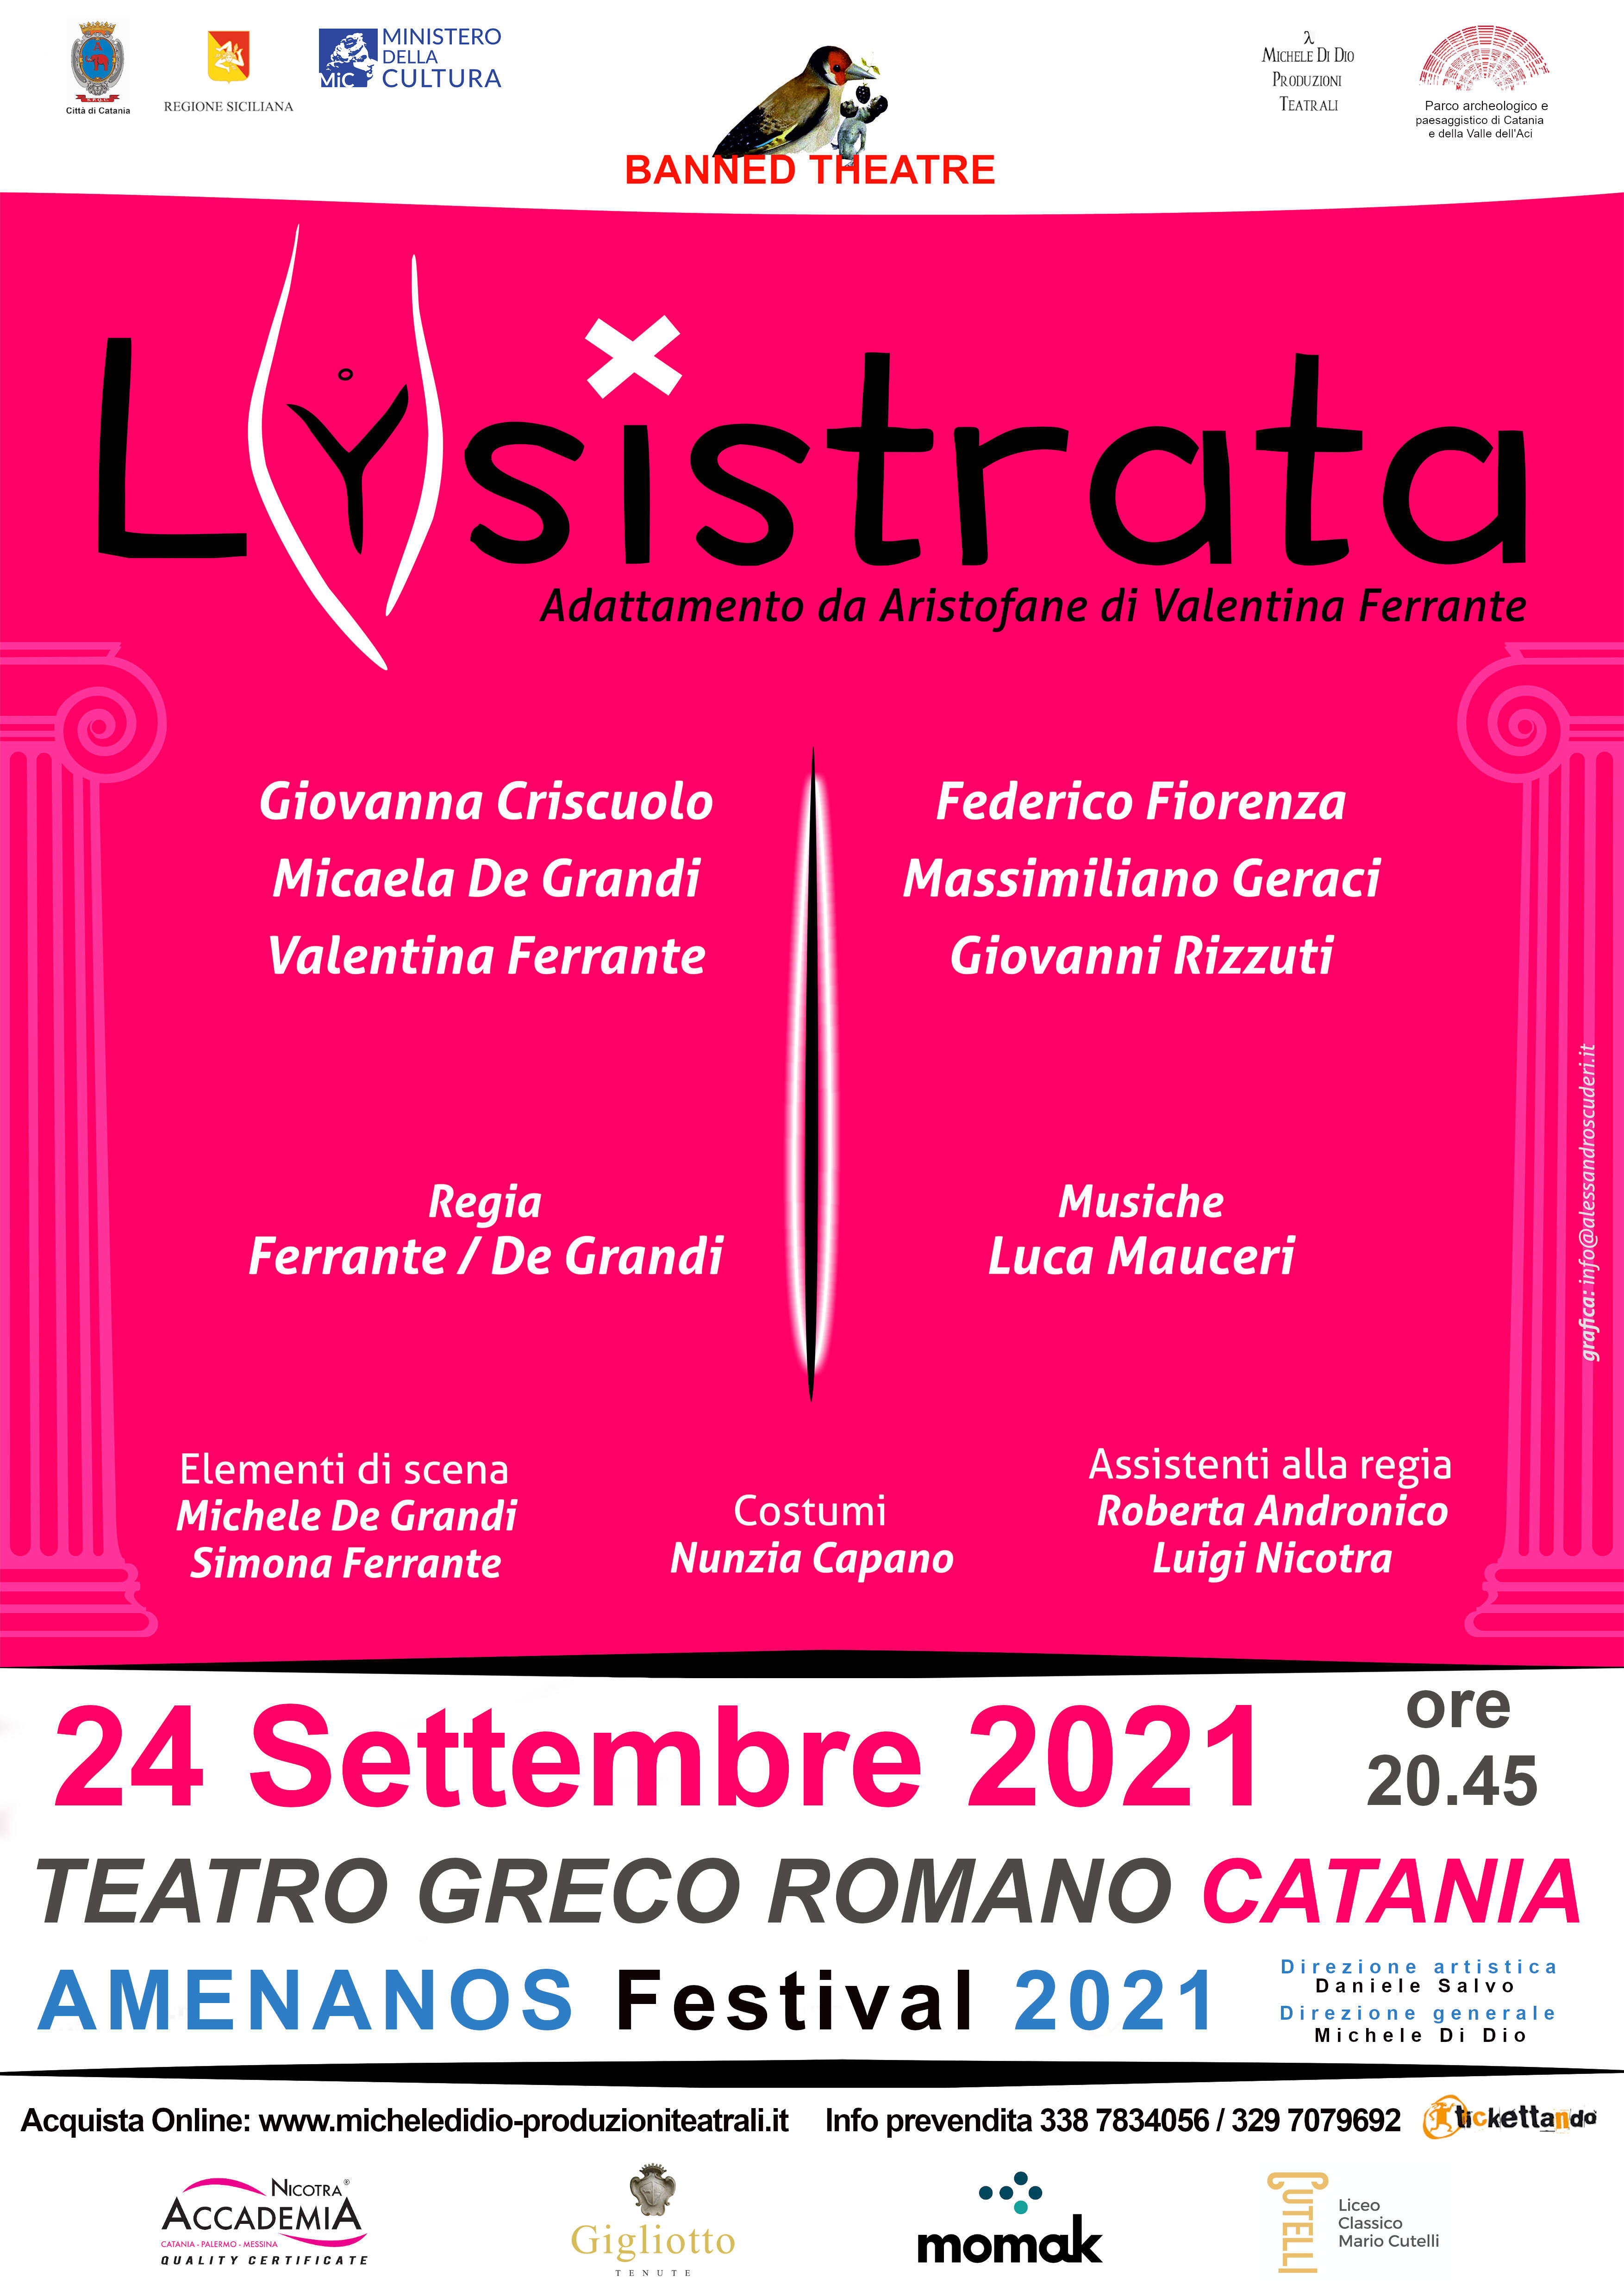 Commedia, Aristofane, Amenanos Festival,Teatro Greco Romano, Catania